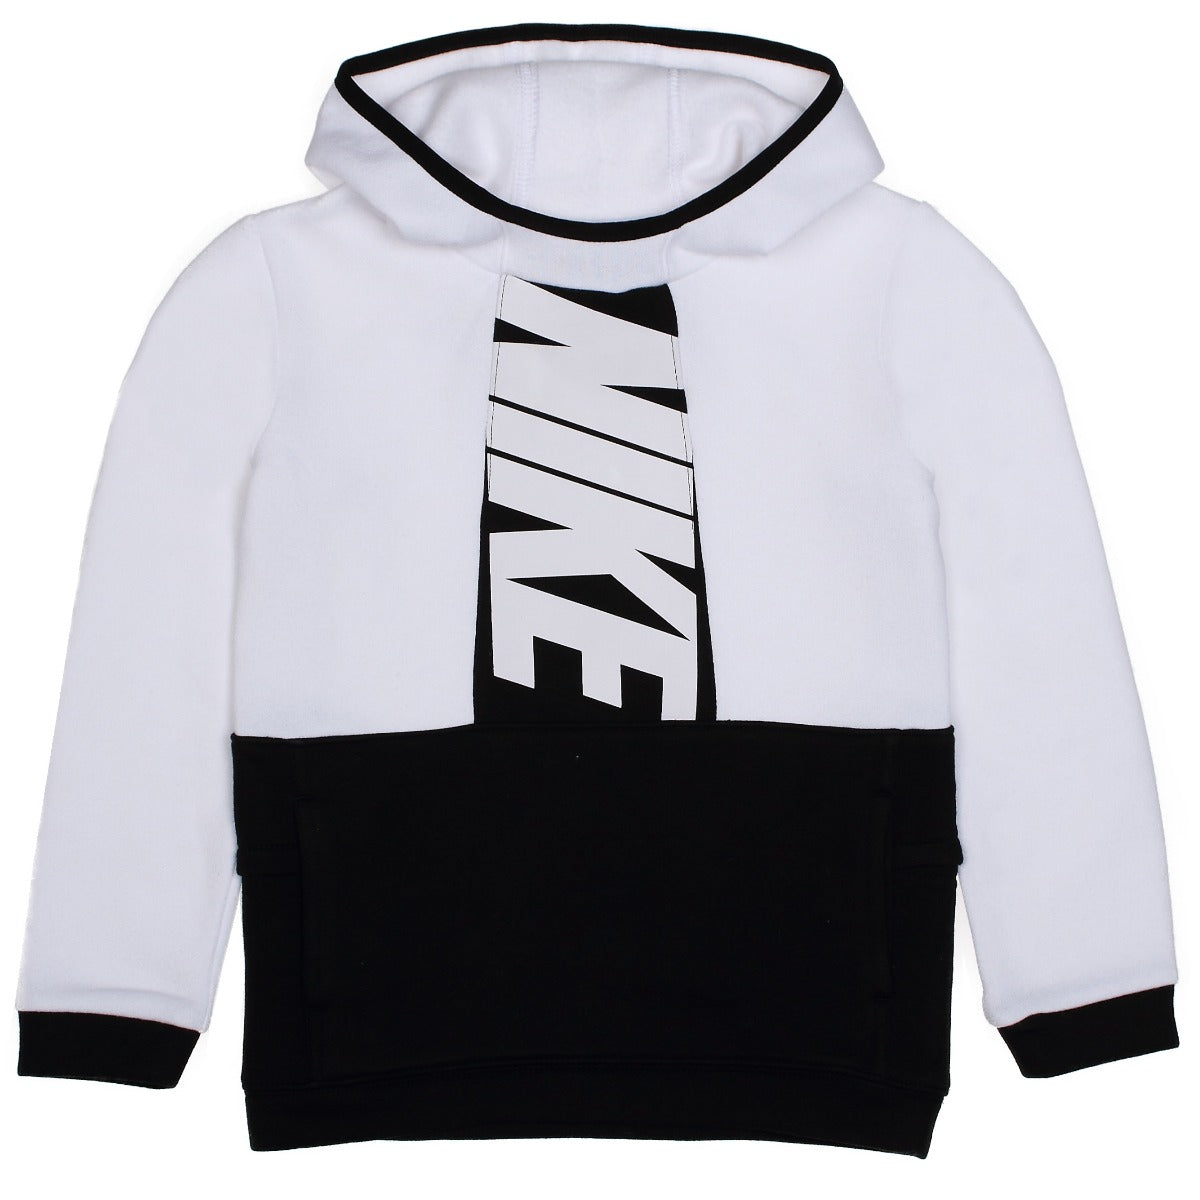 Sweat Nike Sportswear Ampliffy Enfant - Blanc/Noir